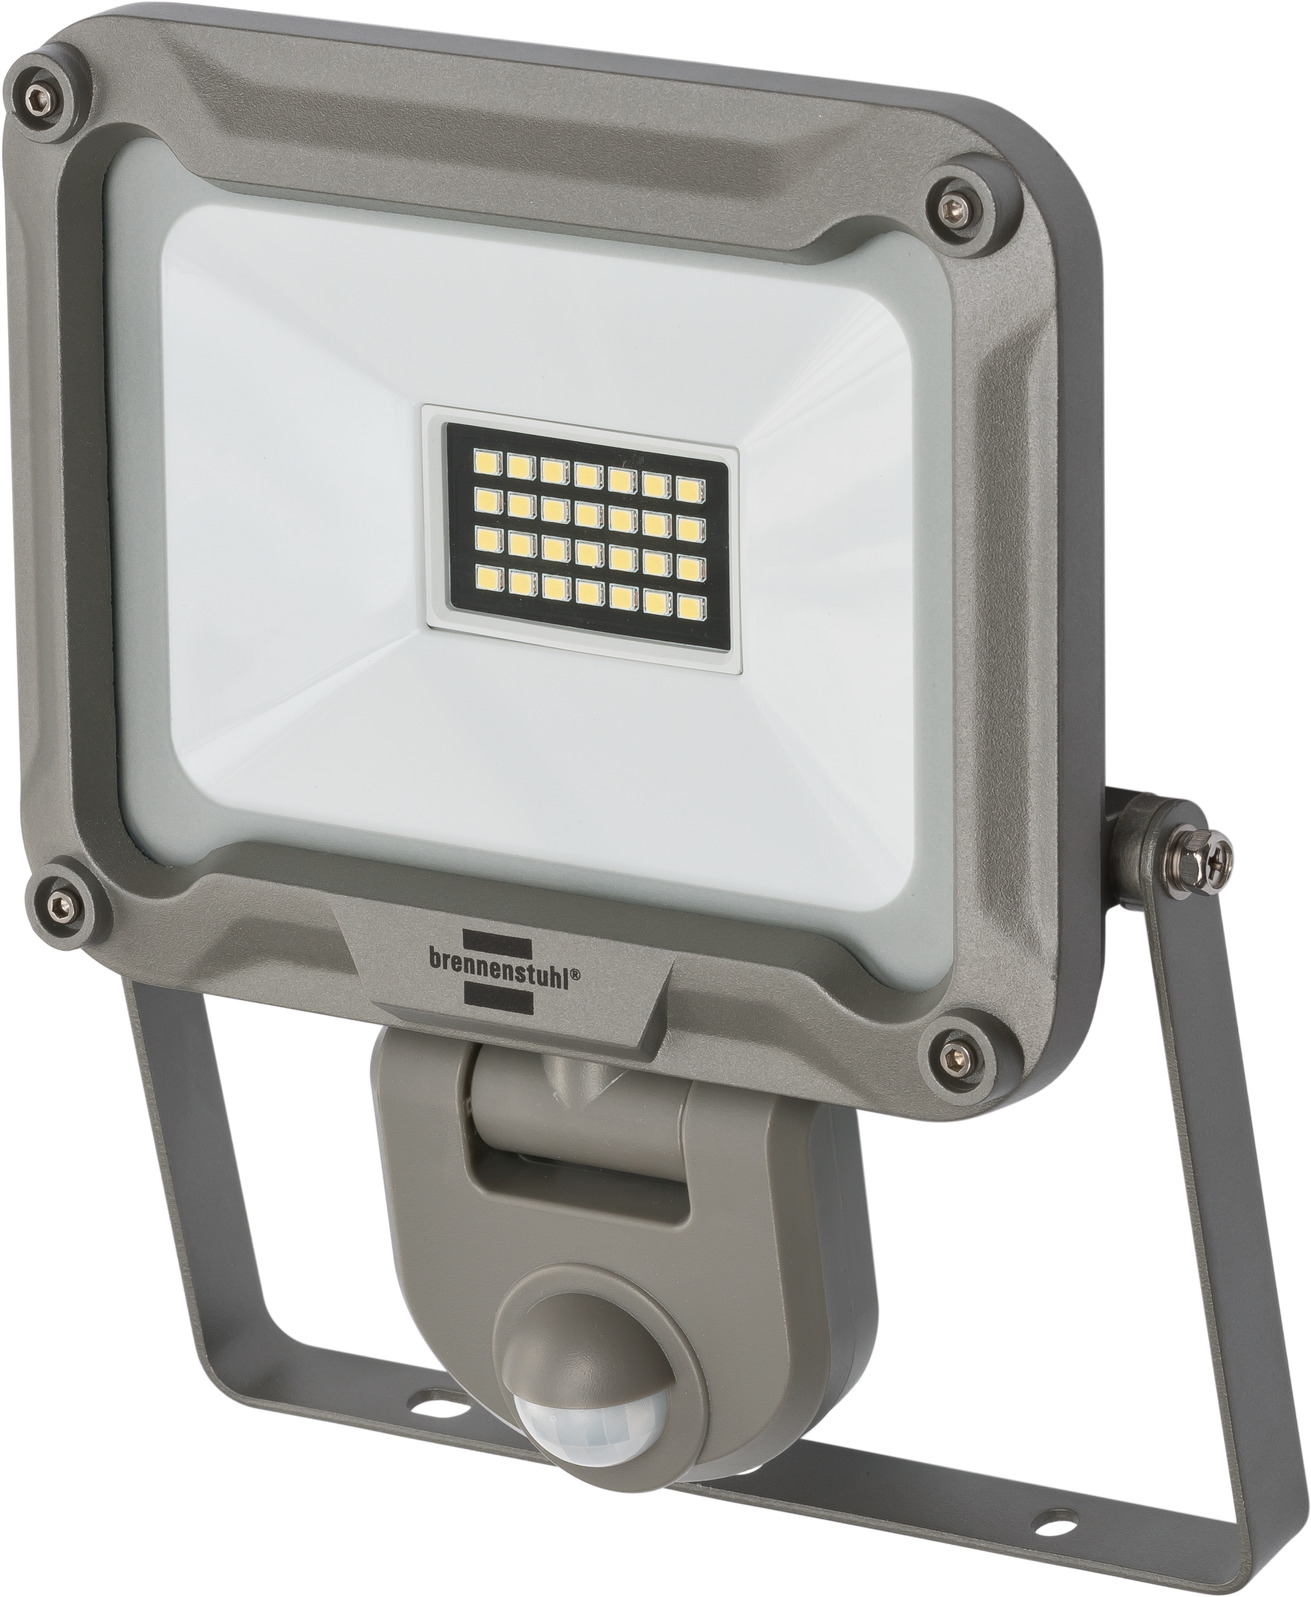 LED Strahler JARO 2050 P mit Infrarot-Bewegungsmelder 1950lm, 19,7W, IP54 |  brennenstuhl®